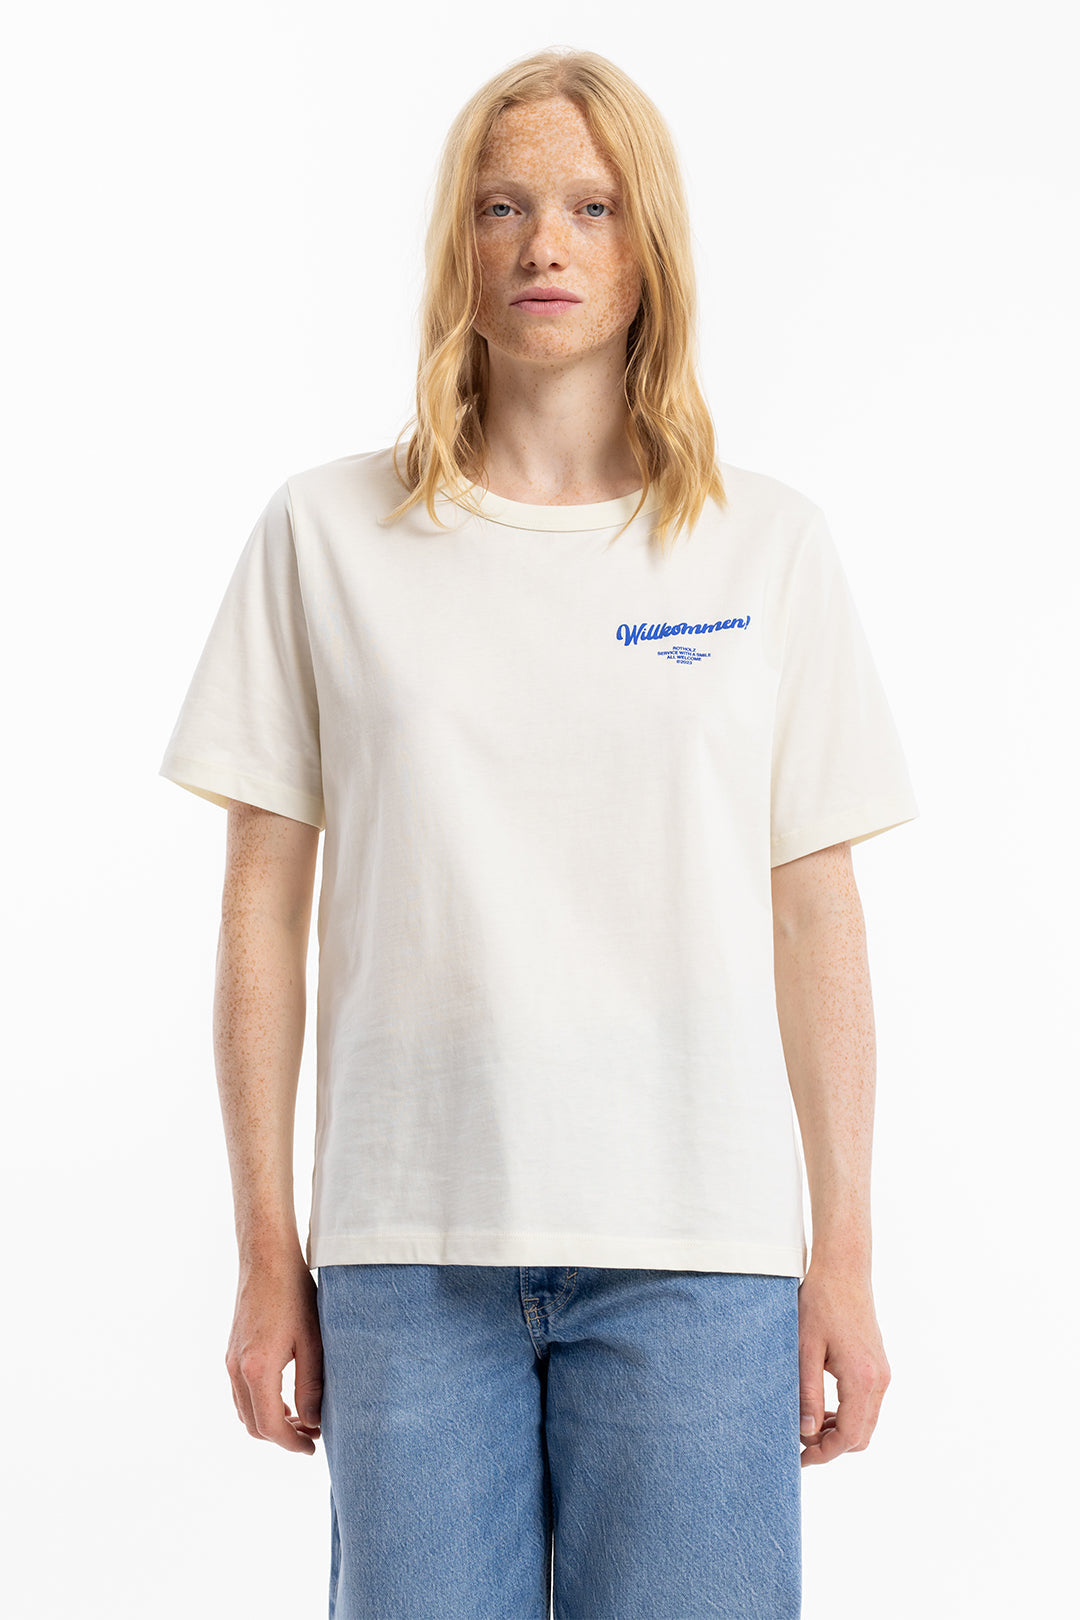 T-shirt blanc imprimé de bienvenue en coton 100% biologique de Rotholz